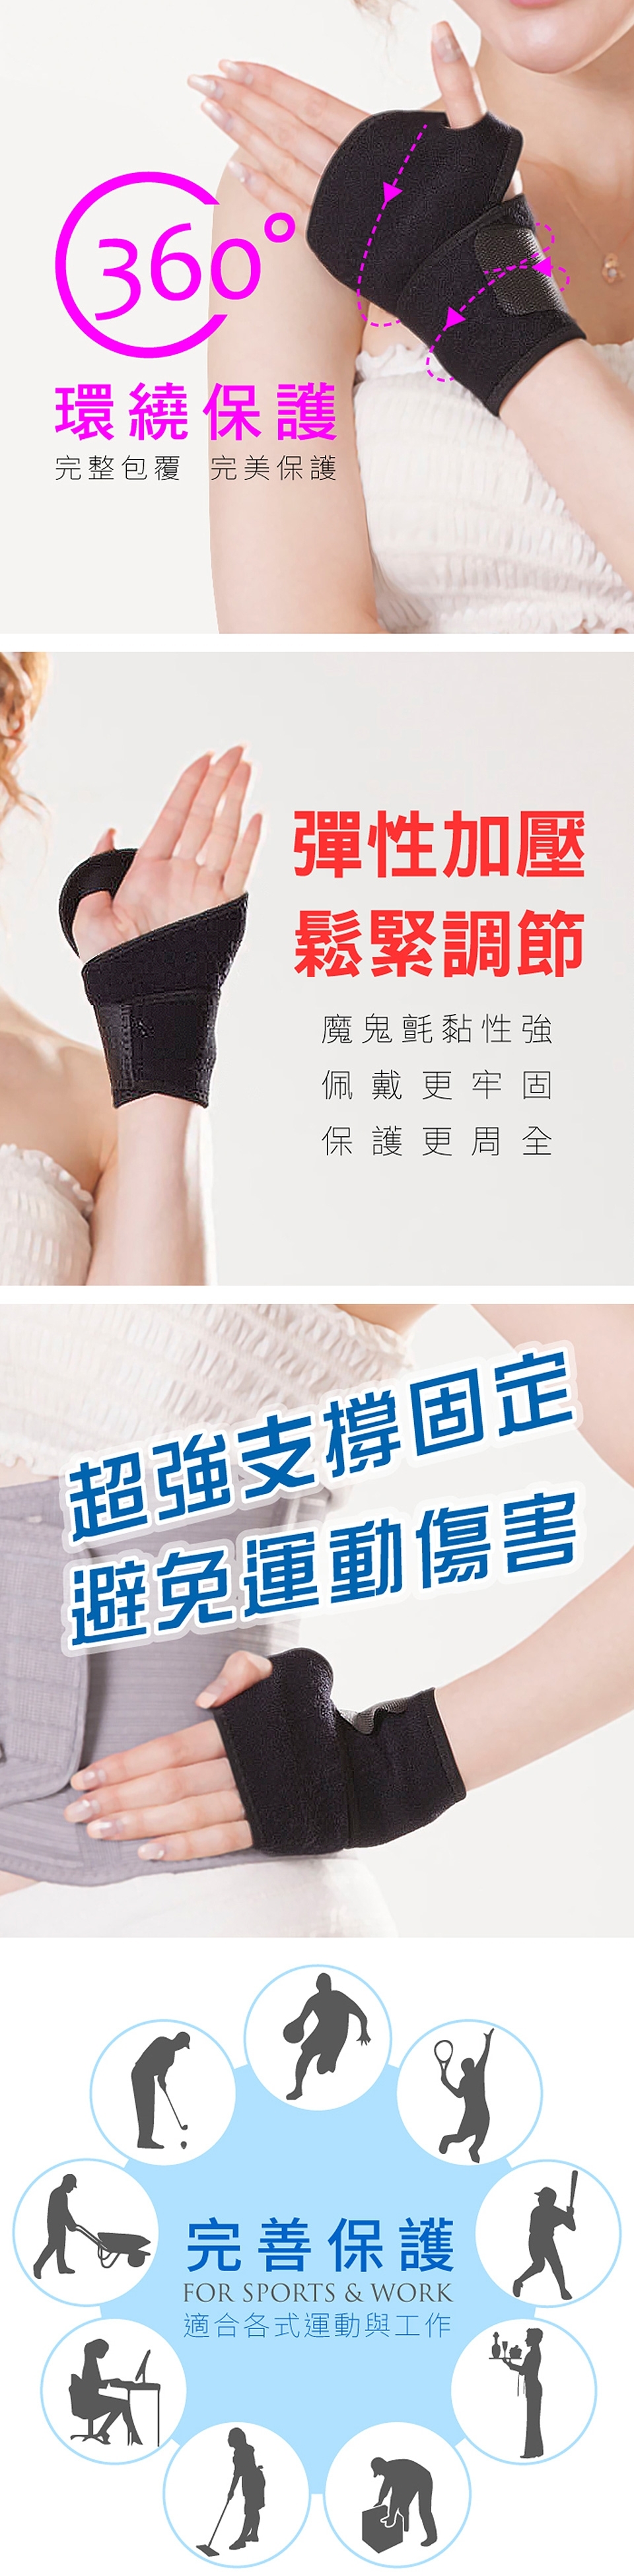 【Yi-sheng】*發燒新品*健康減壓護脊板挺背帶(611美背+拇指護腕)